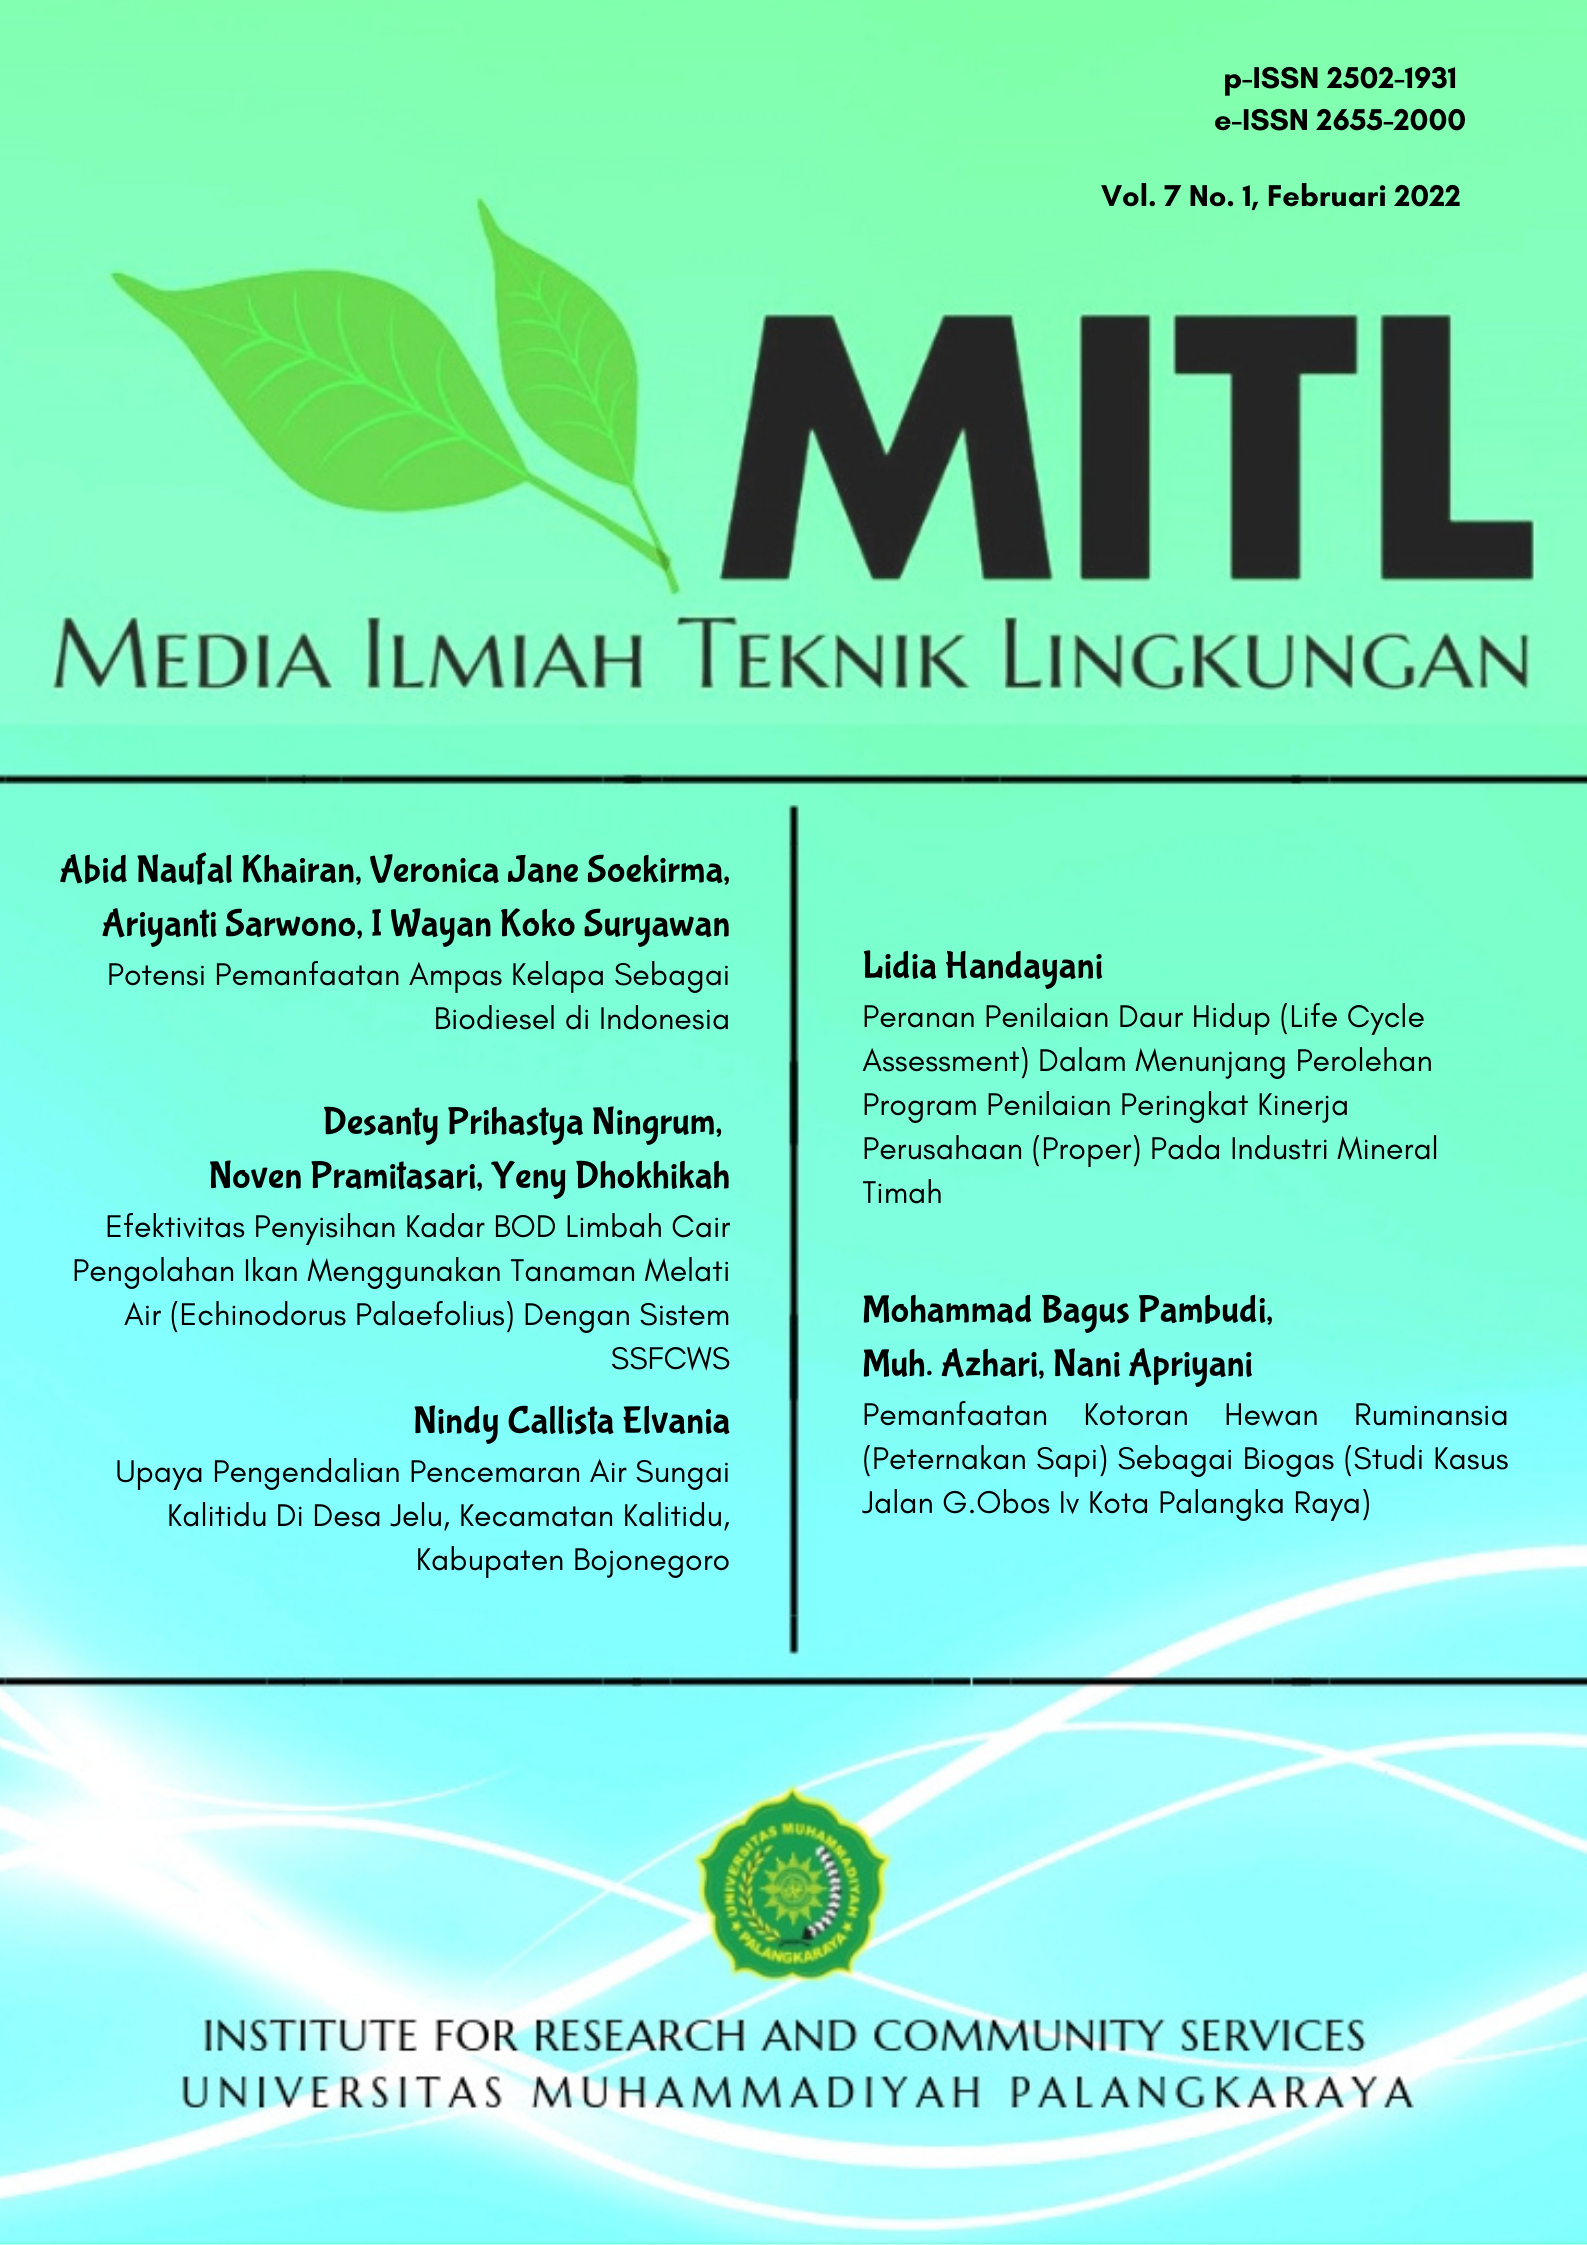 					View Vol. 7 No. 1 (2022): Media Ilmiah Teknik Lingkungan (MITL)
				